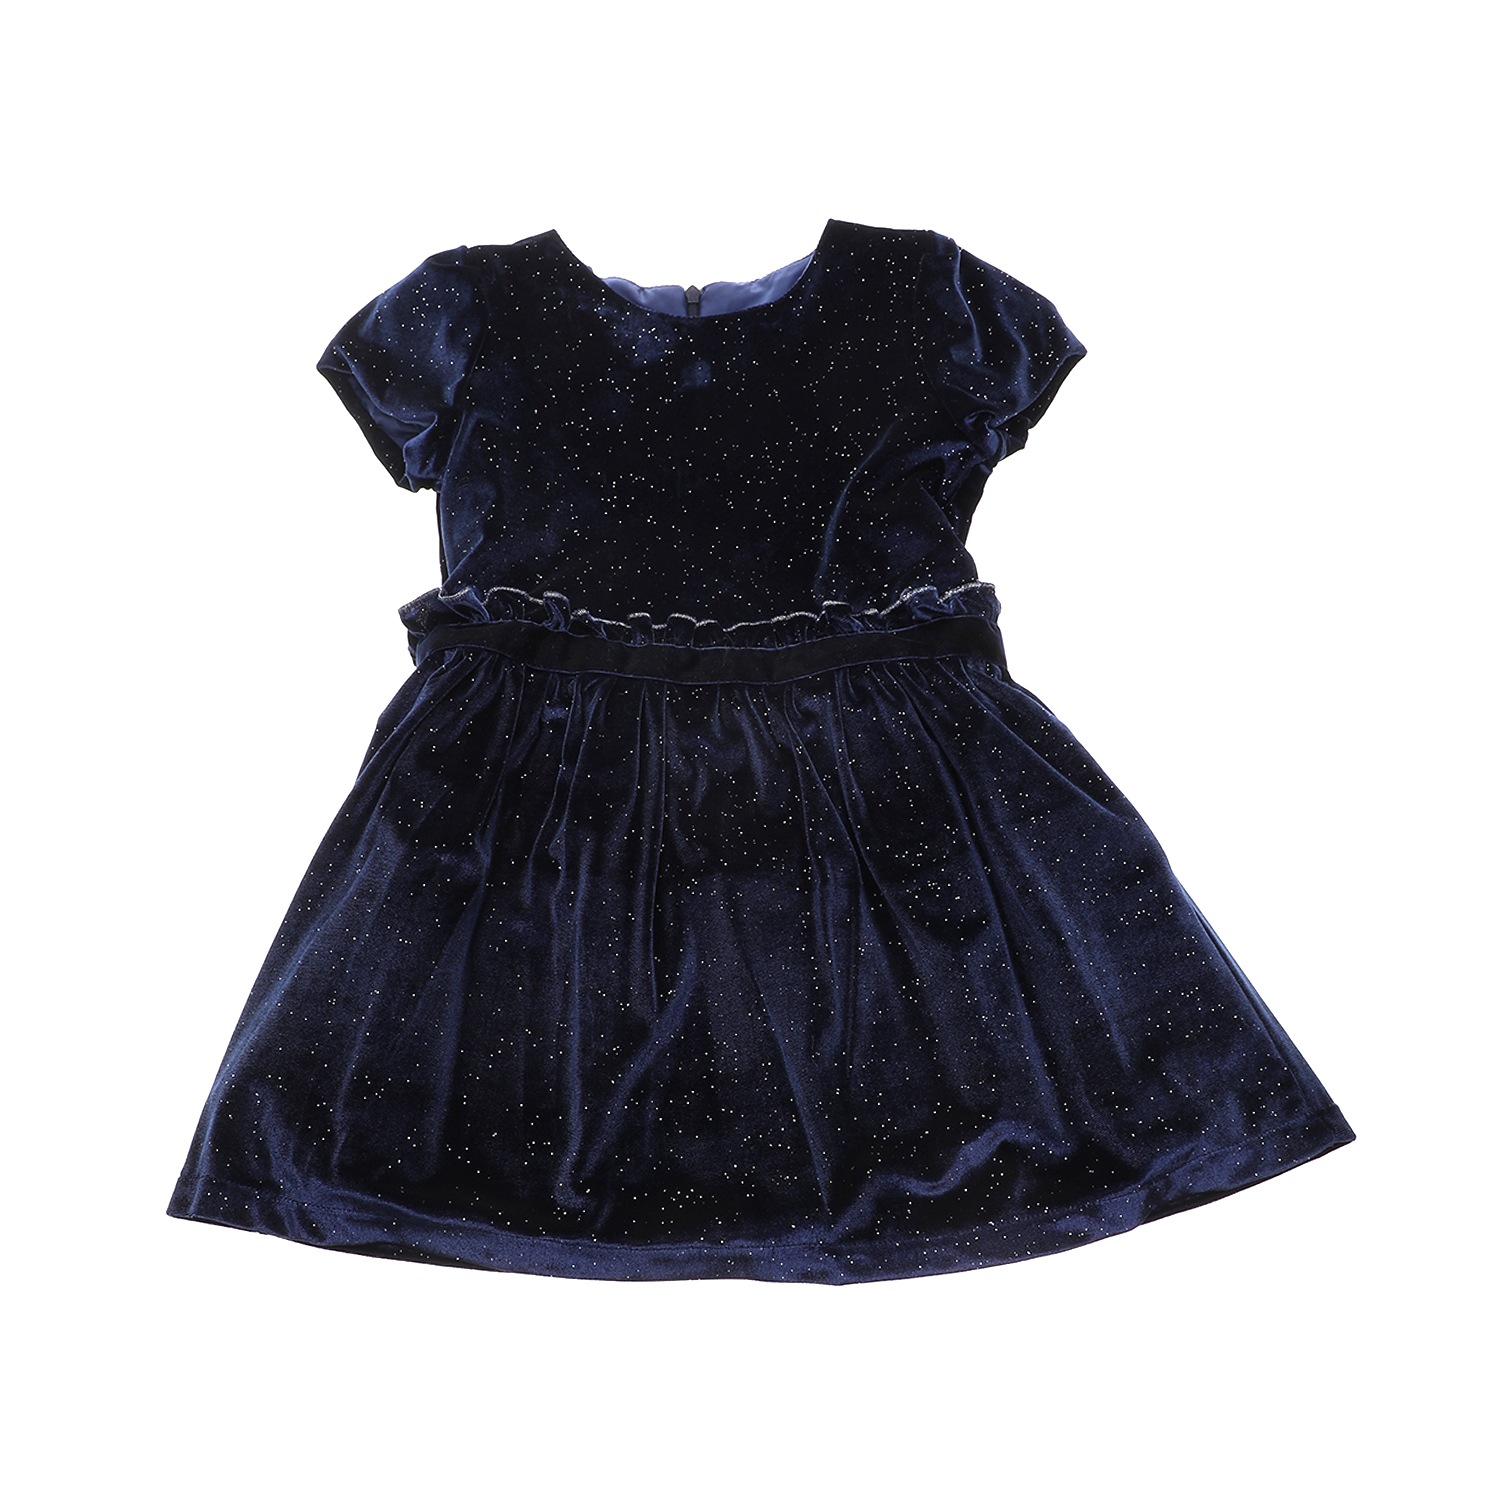 Παιδικά/Girls/Ρούχα/Φορέματα Κοντομάνικα-Αμάνικα SAM 0-13 - Παιδικό φόρεμα SAM 0-13 μπλε ασημί